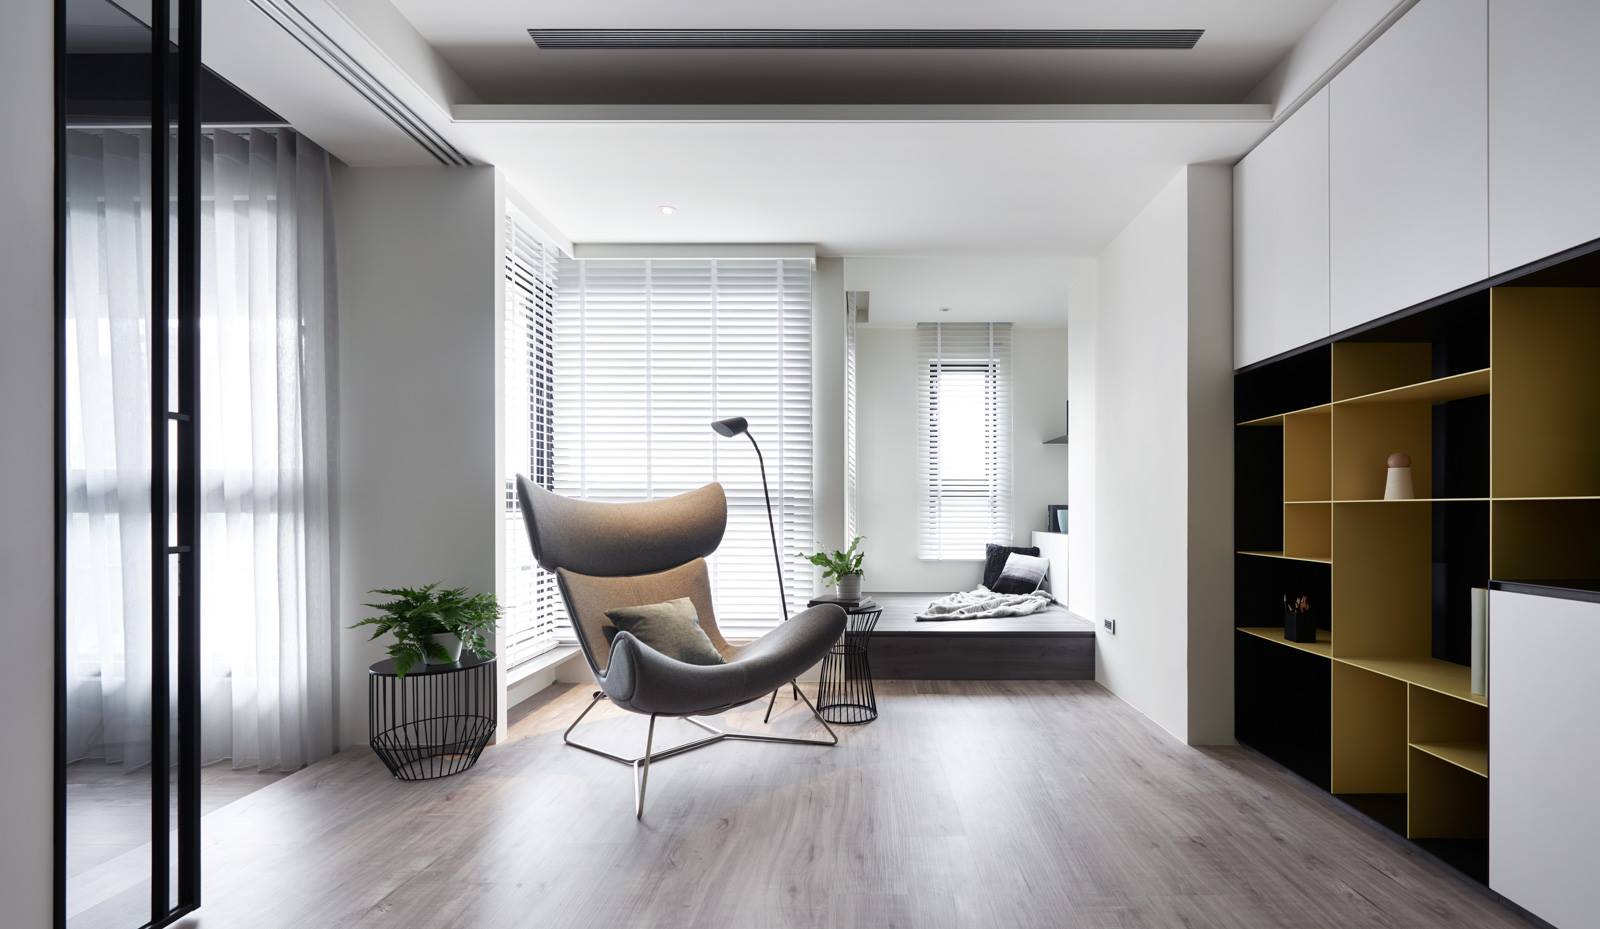 次卧干净整洁，收纳柜增加视觉尺度，于内提升空间质感，给予业主舒适的休憩氛围。